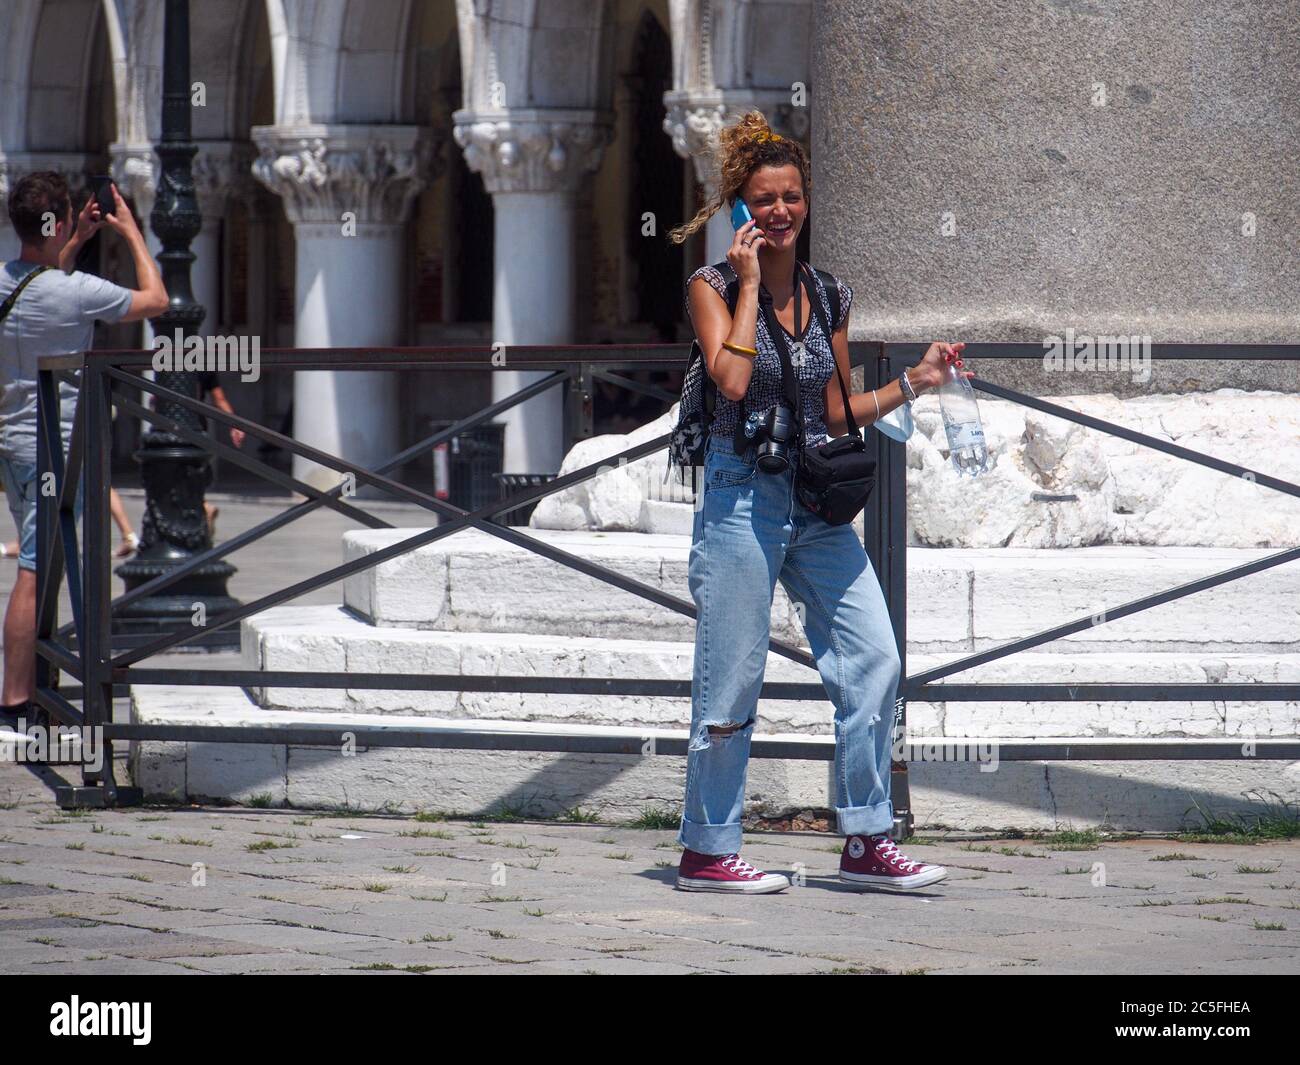 San Marco, Venise, Italie - juillet 2020. Les touristes européens seulement sont lentement de retour dans la Venise déserte après Covid-19 confinement ville lutte pour survivre Banque D'Images